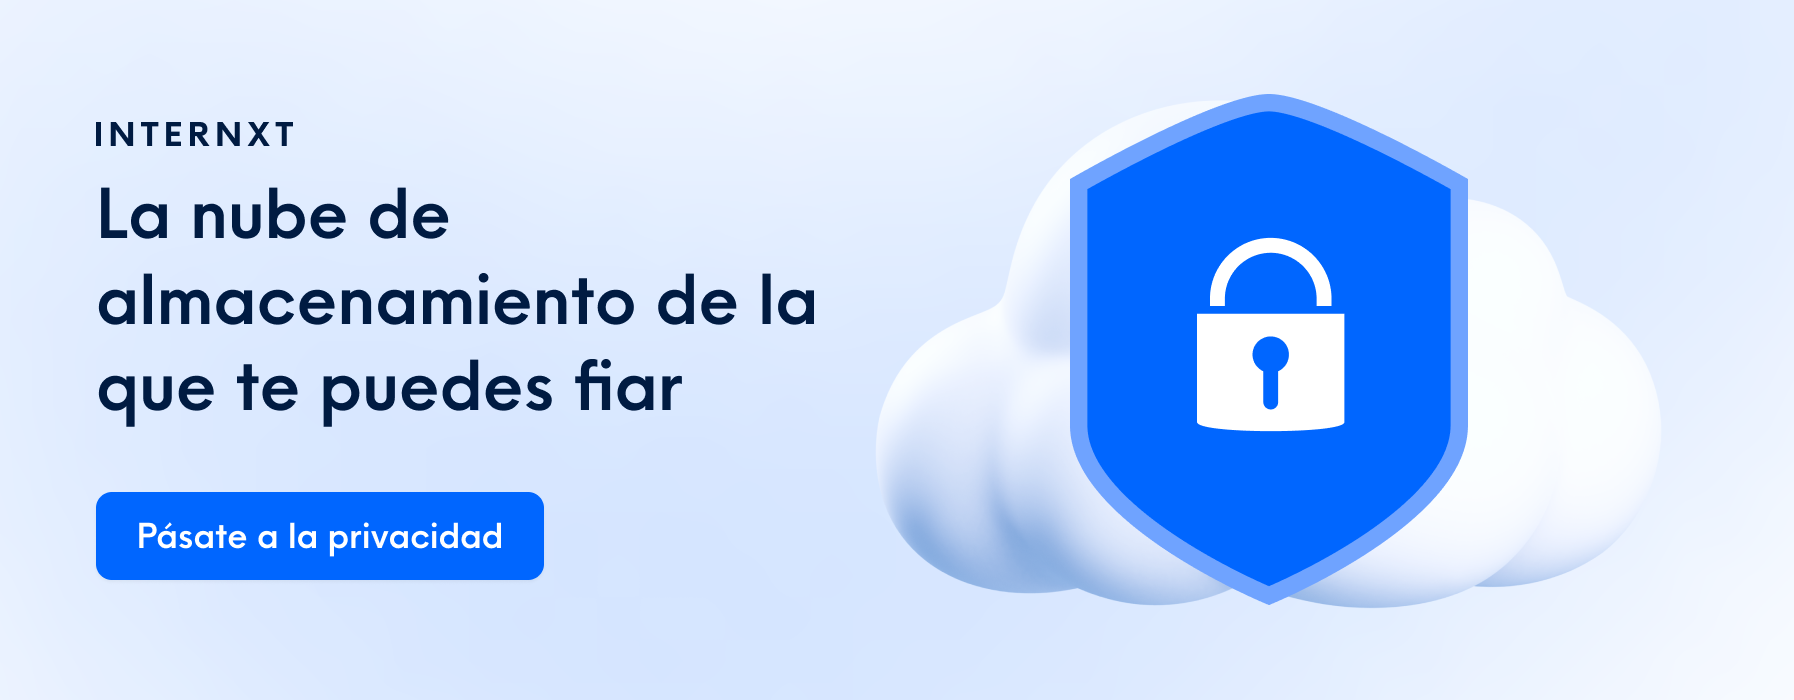 Internxt es un servicio de almacenamiento en la nube basado en el cifrado y la privacidad.